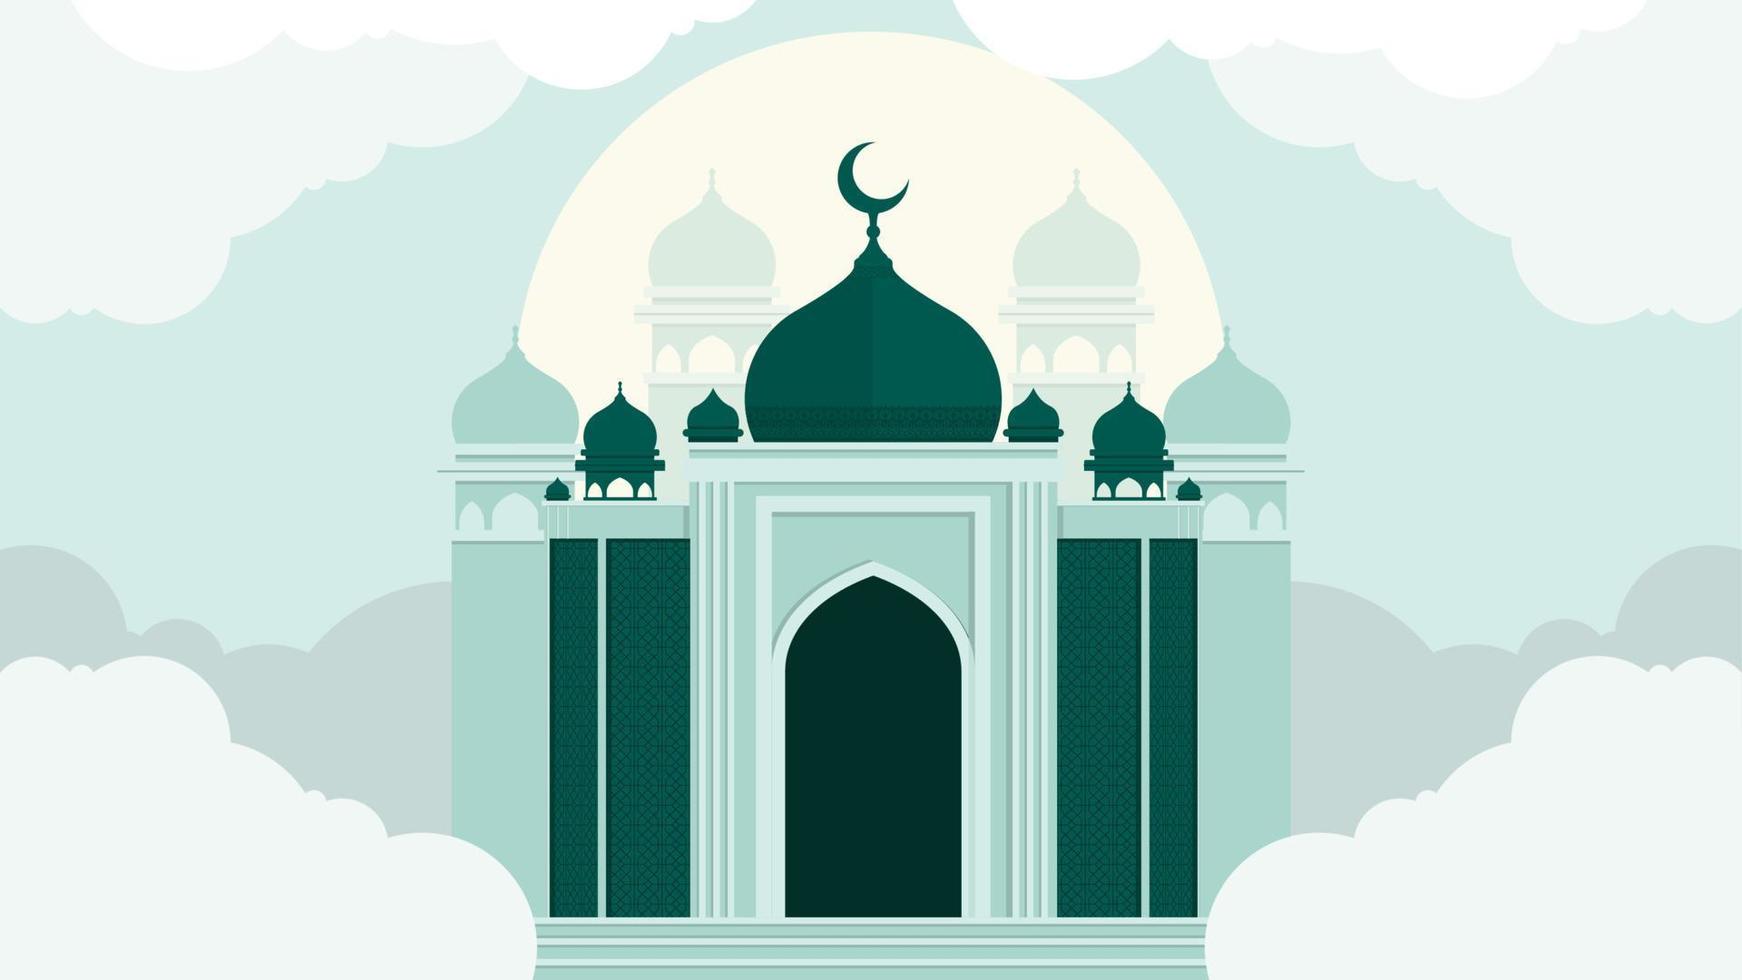 islamisches hintergrunddesign mit moscheenillustration für desktopdesign oder websitedesign vektor